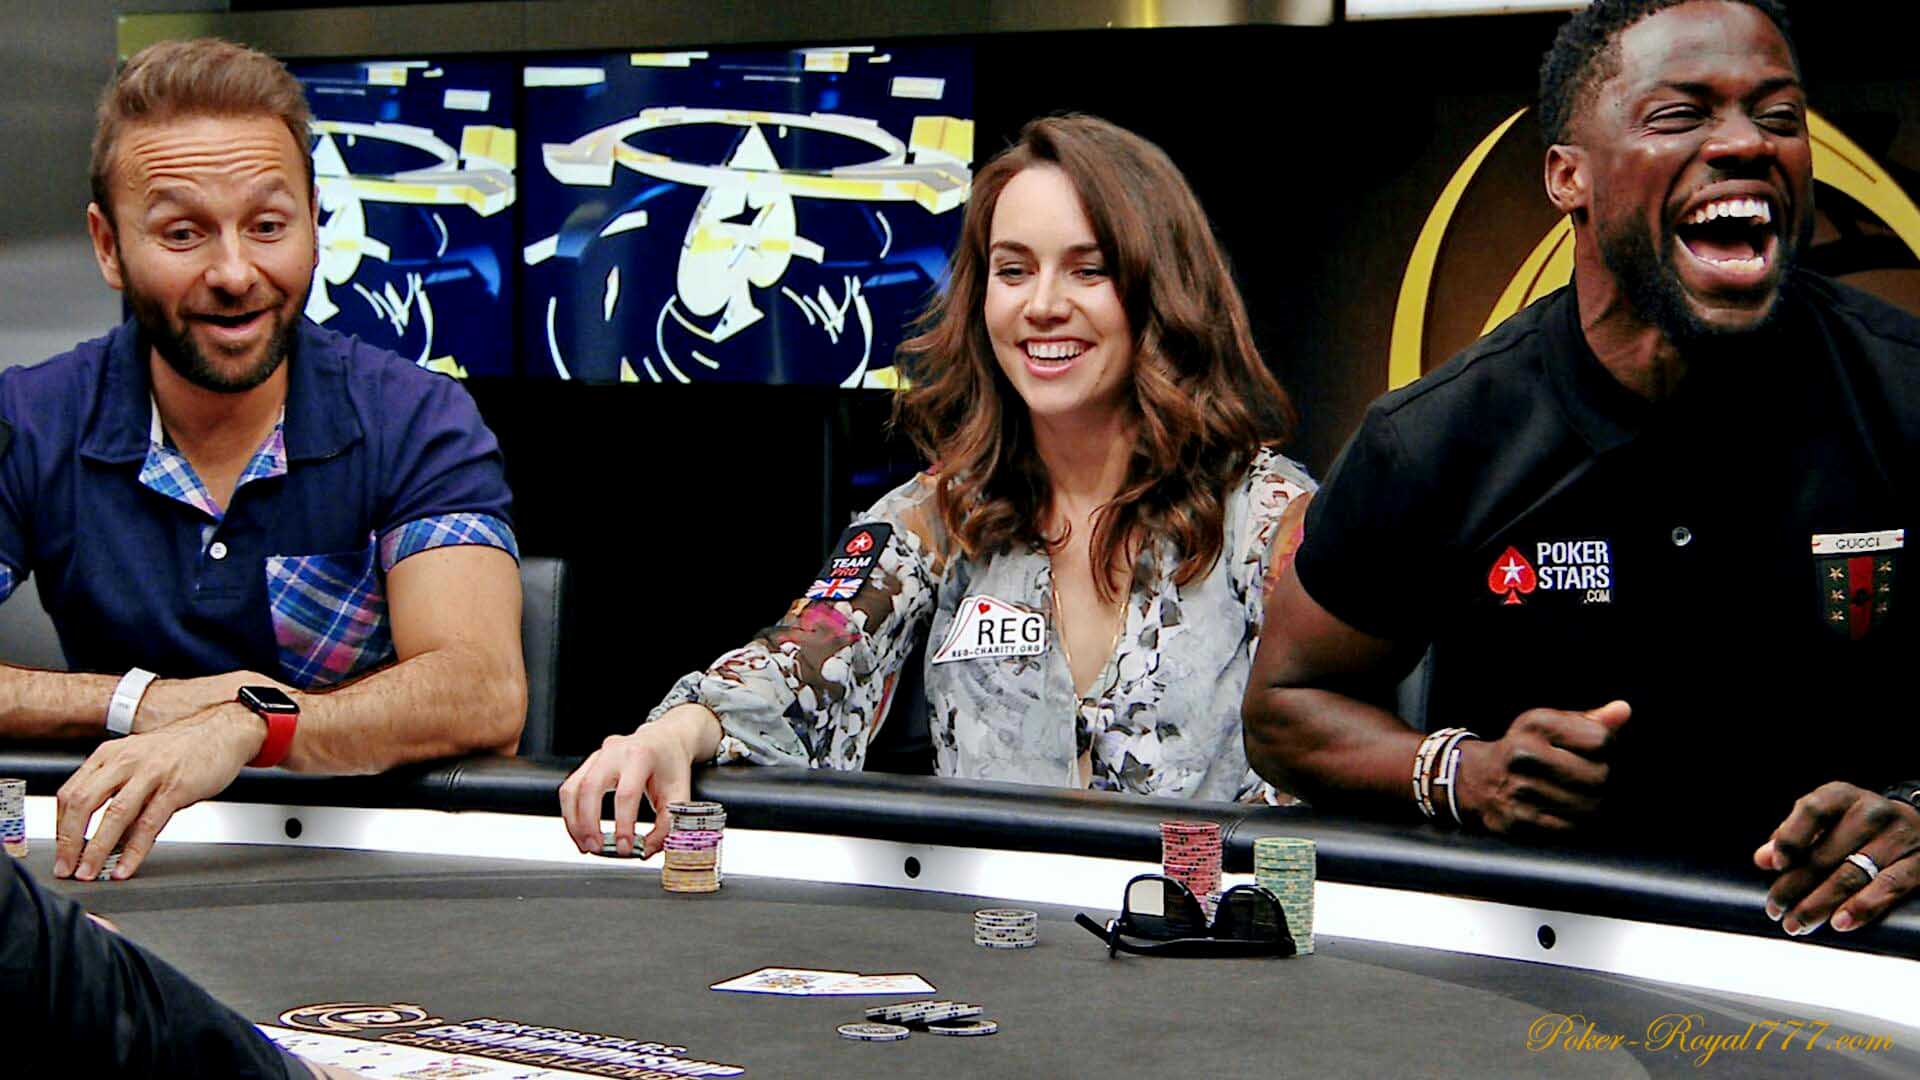 ТОП лучших игроков в покер среди женщин. Часть 1